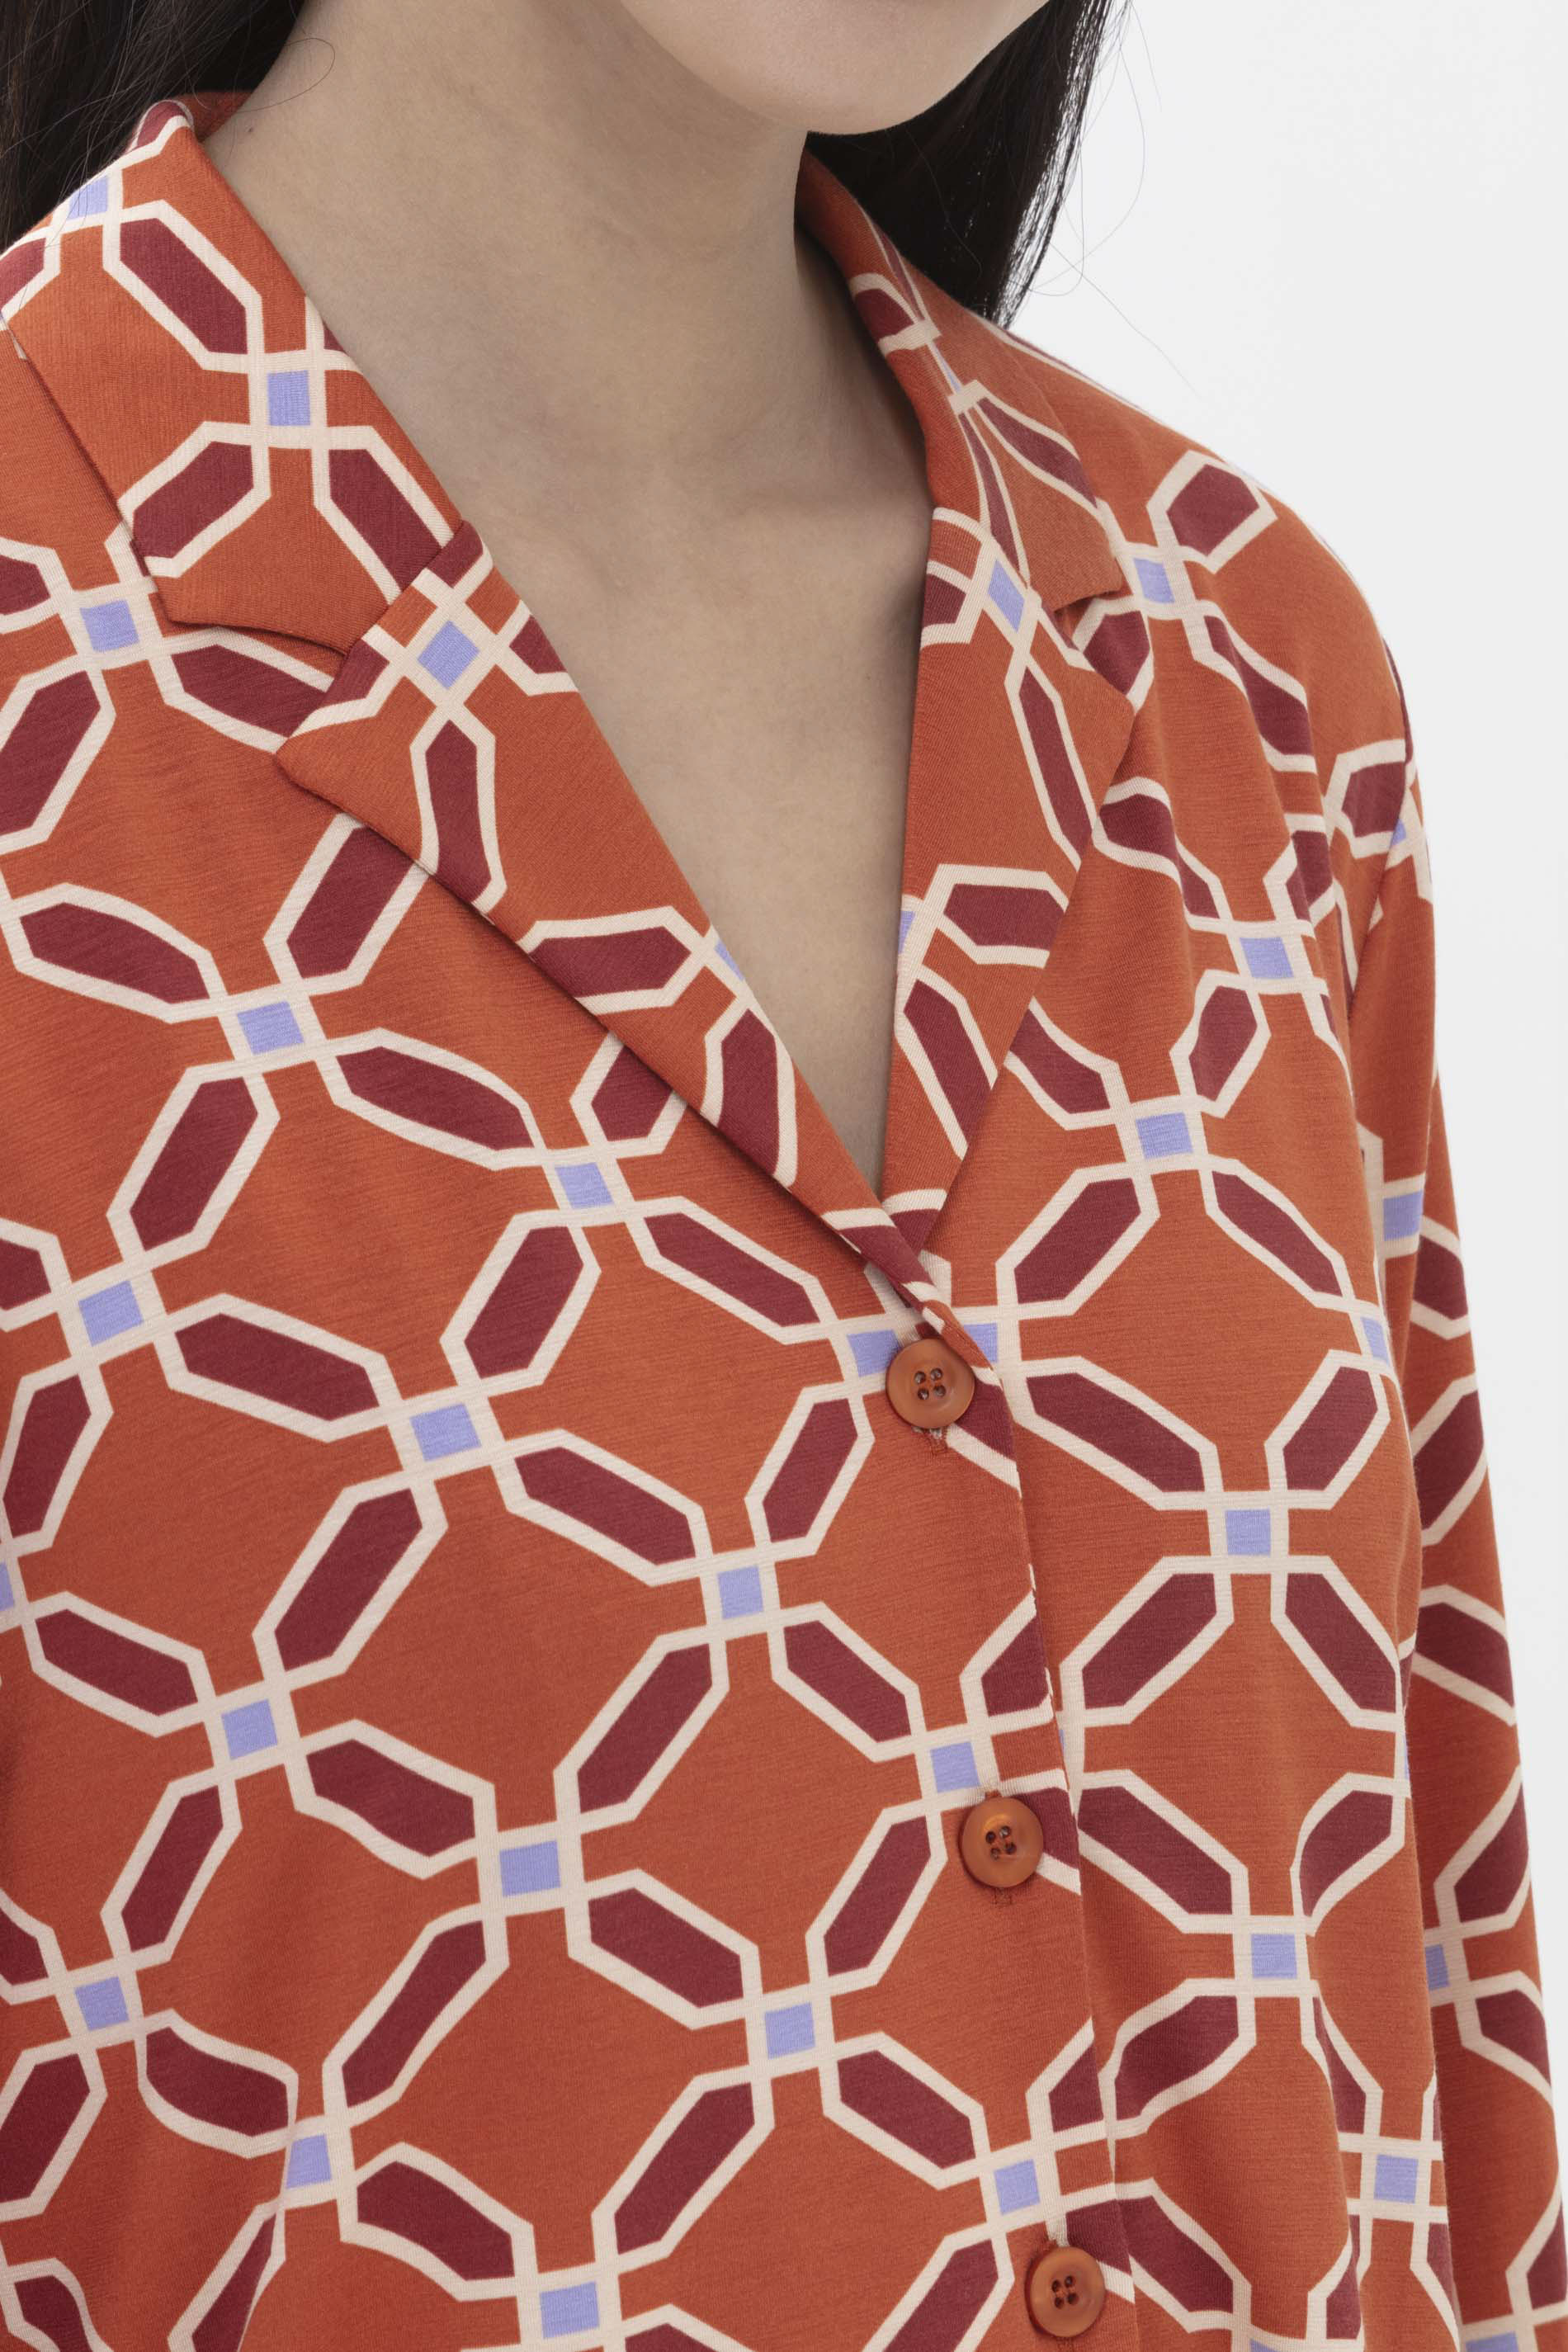 Pyjama shirt Cinnamon Serie Carima Detail View 01 | mey®